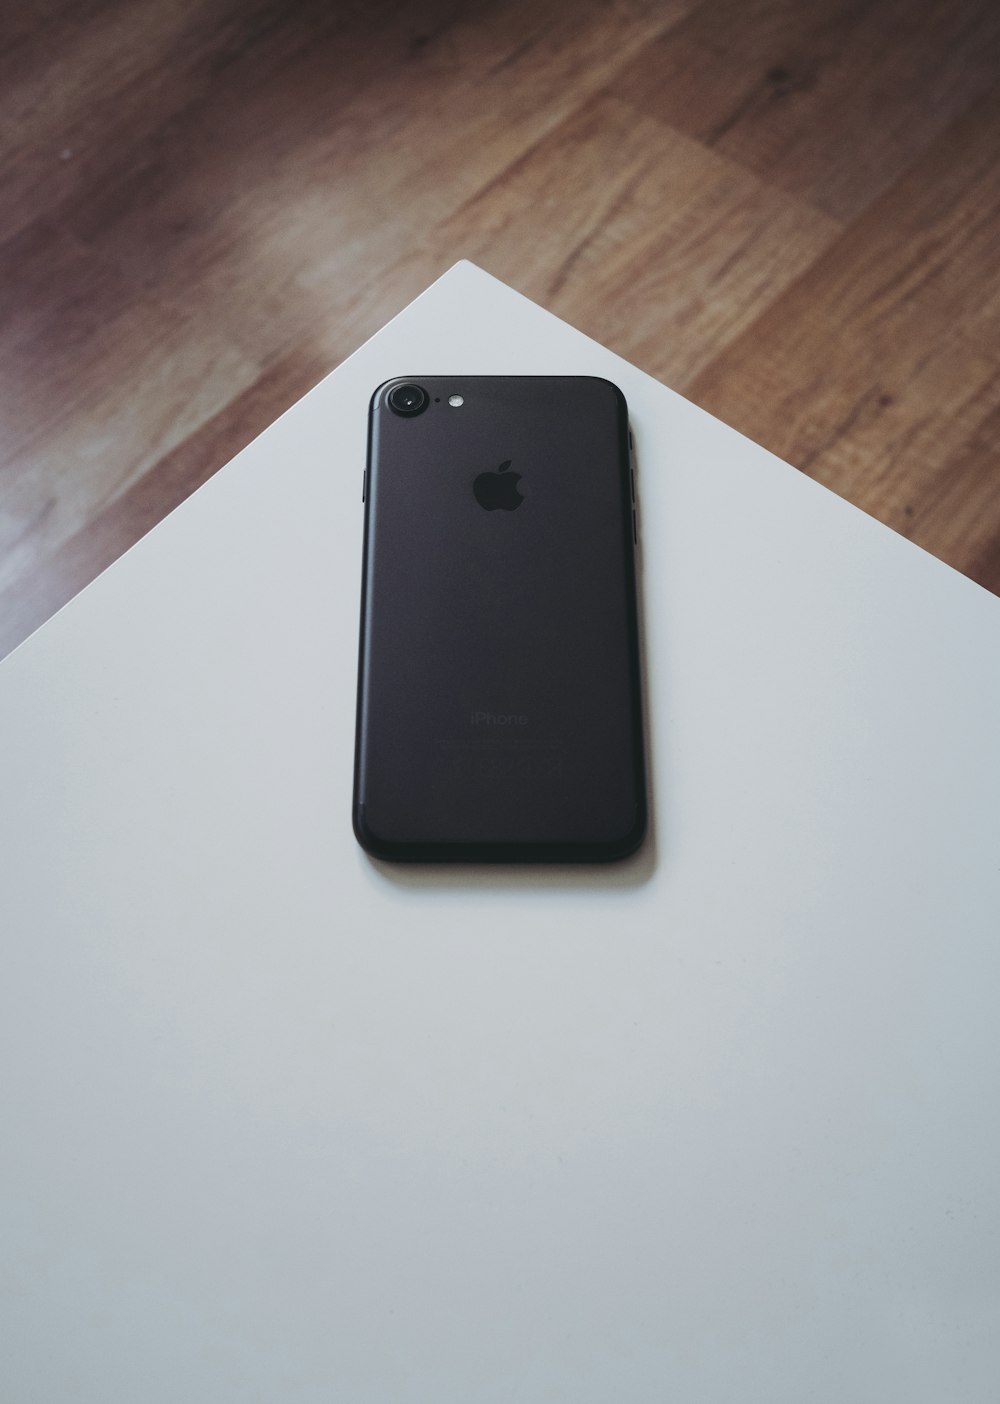 iPhone 7 preto na mesa de madeira branca